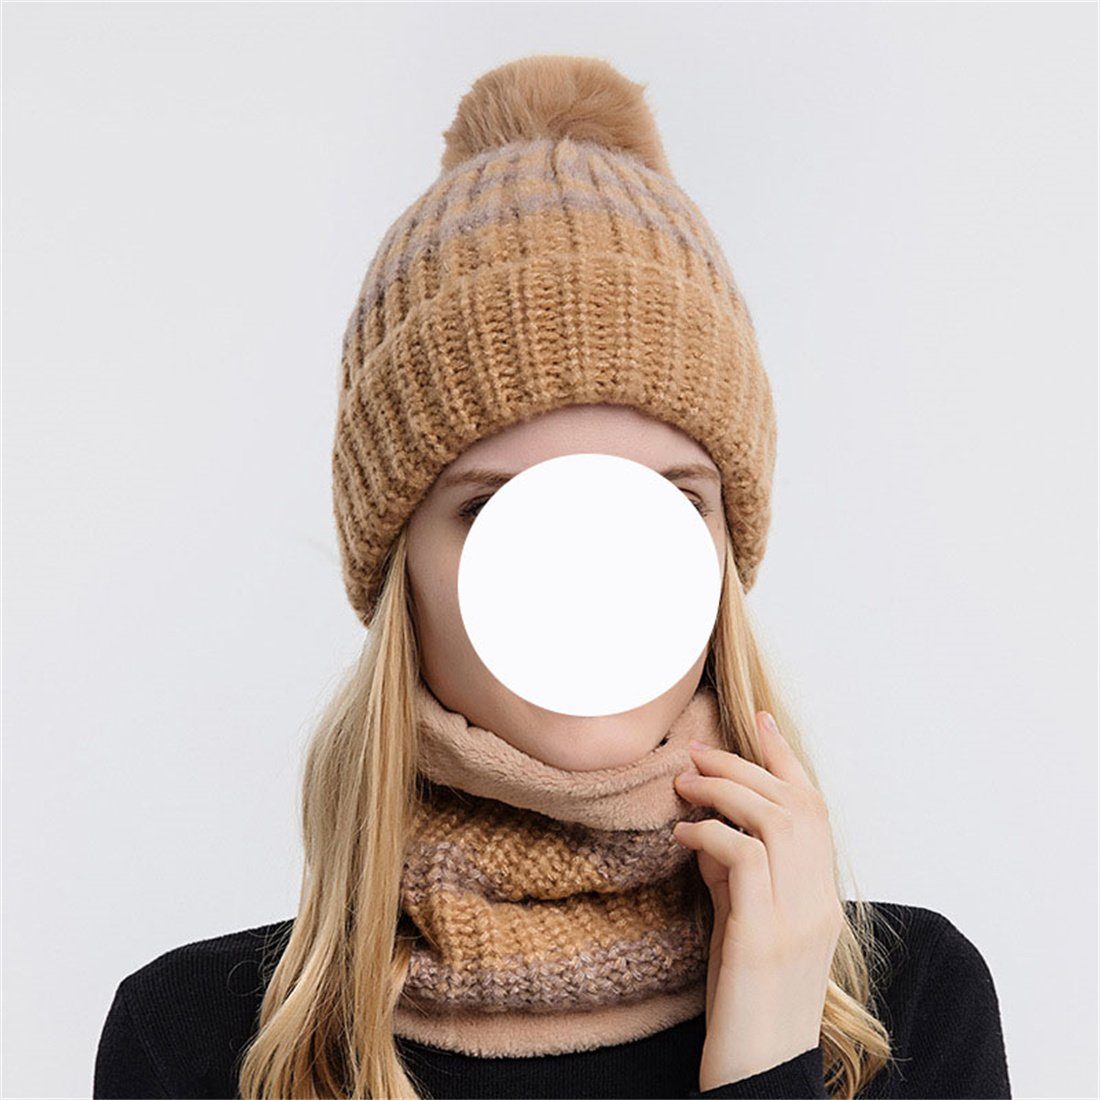 Woolen Schal Fashion DÖRÖY Winter Knitted + Pcs Warm Damen Set, Strickmütze 2 Beige Hut Hat